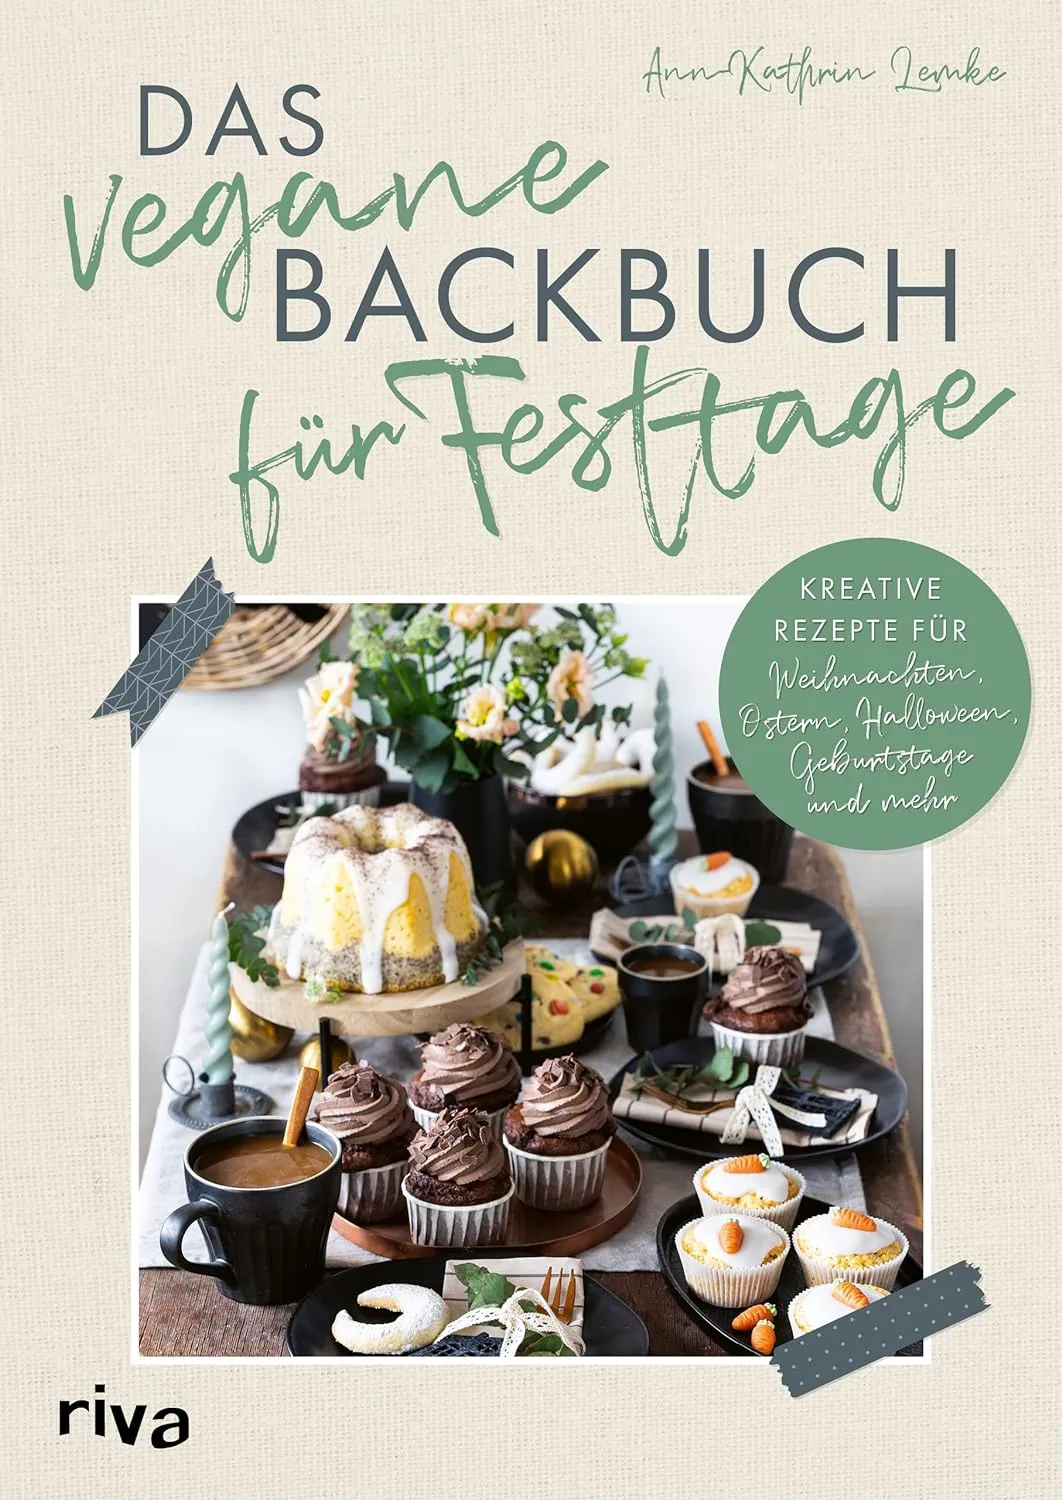 Fledermausmuffins Aus Das Vegane Backbuch Für Fasttage // Himbeer